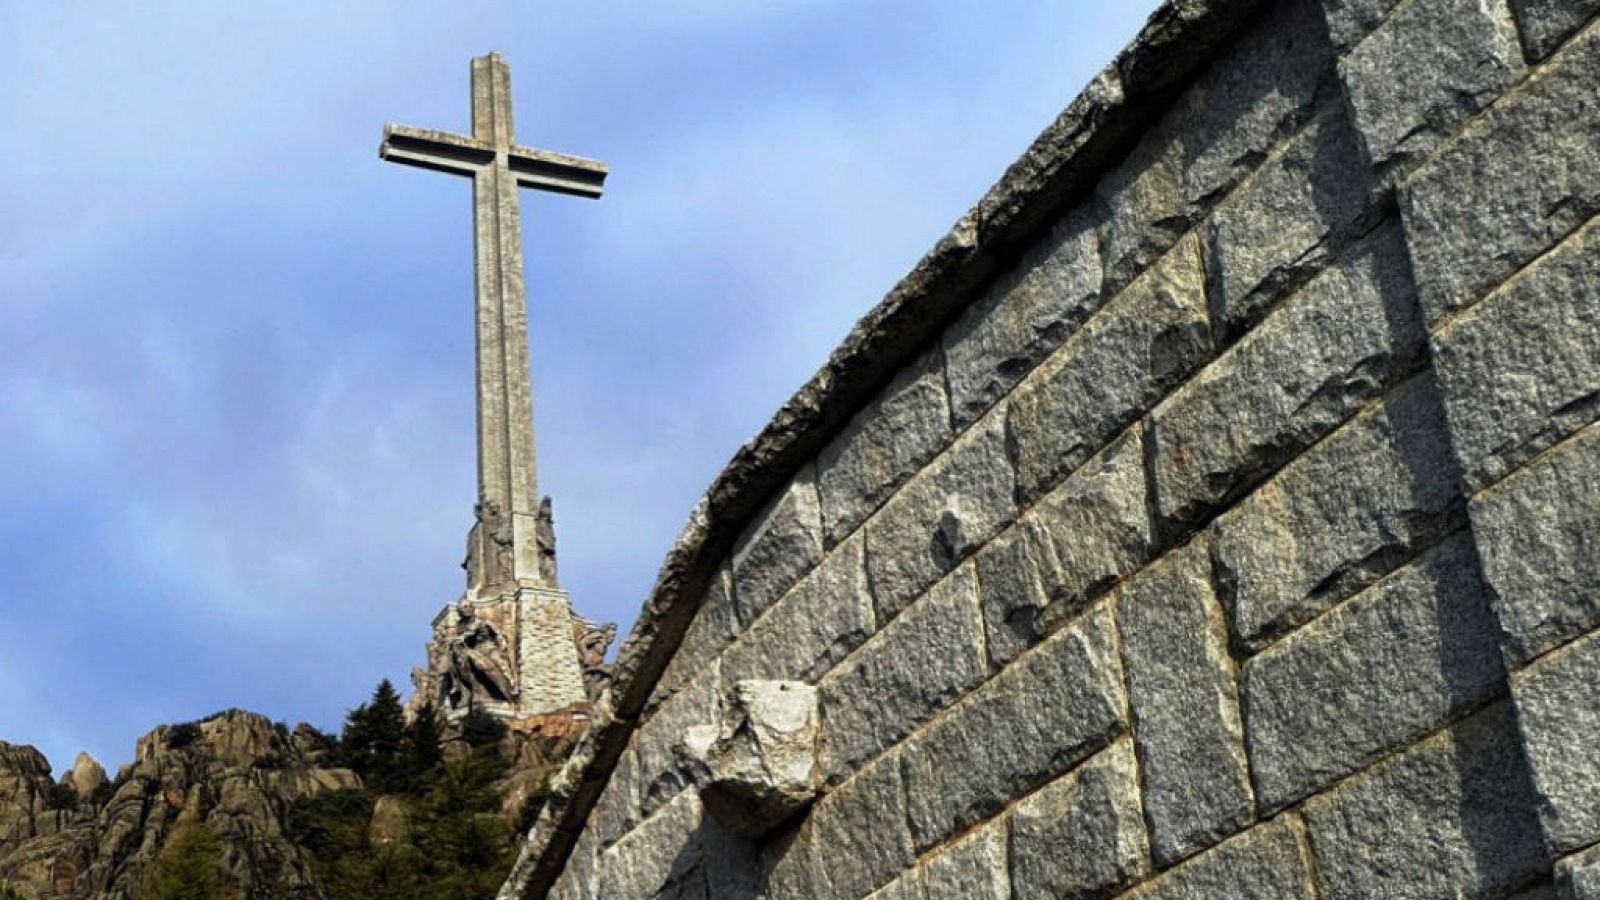  Boletines RNE - El Supremo suspende la exhumación de Franco de forma cautelar - escuchar ahora